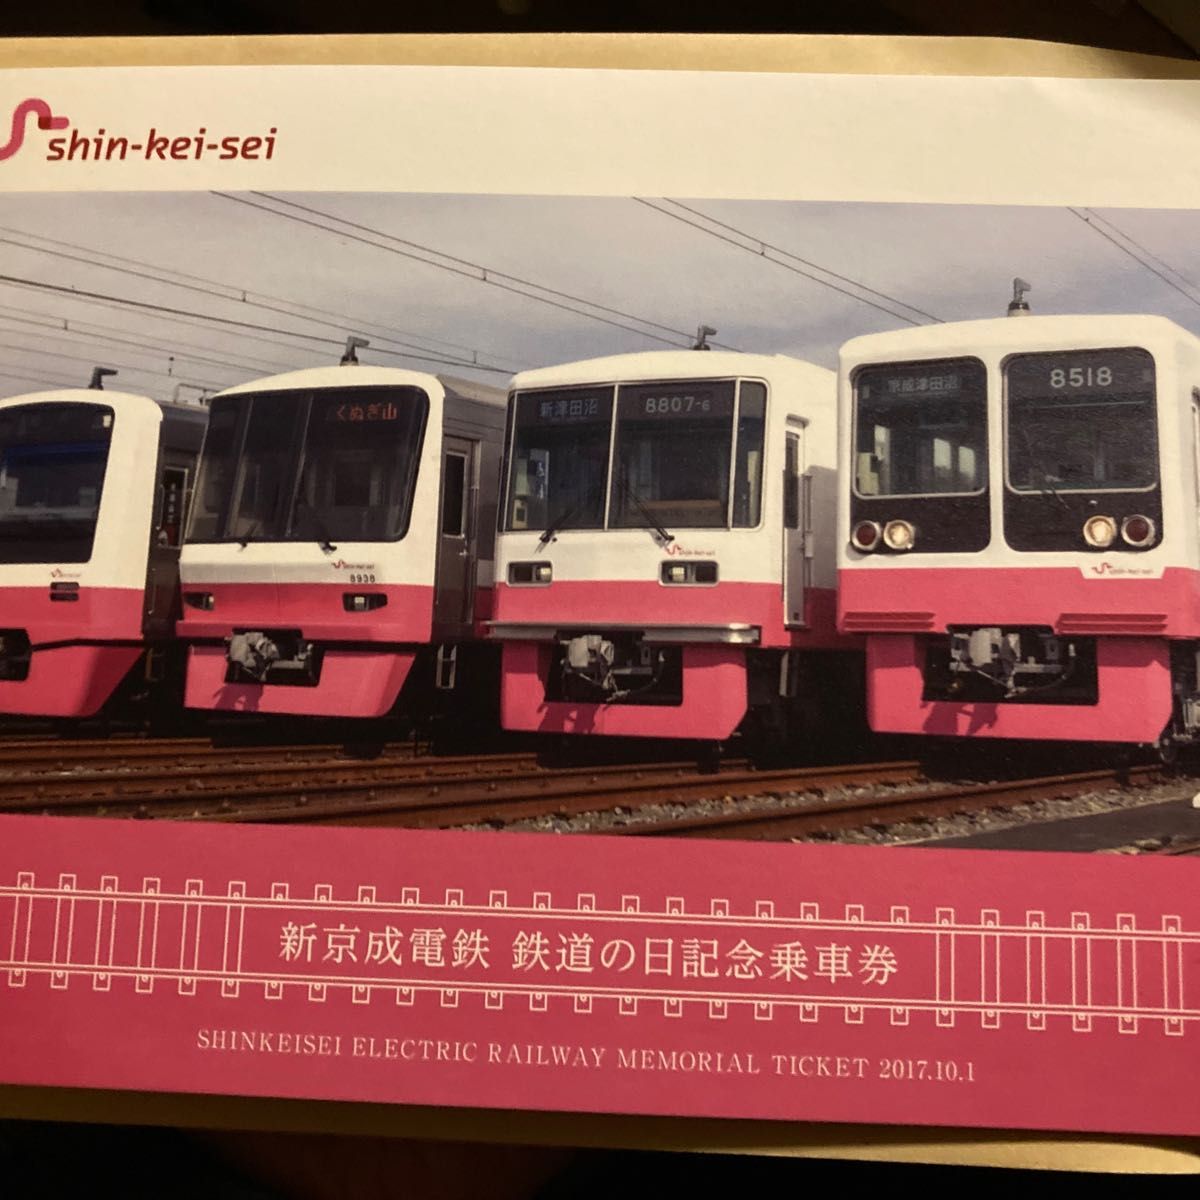 新京成電鉄 70周年 10月14日 鉄道の日記念乗車券